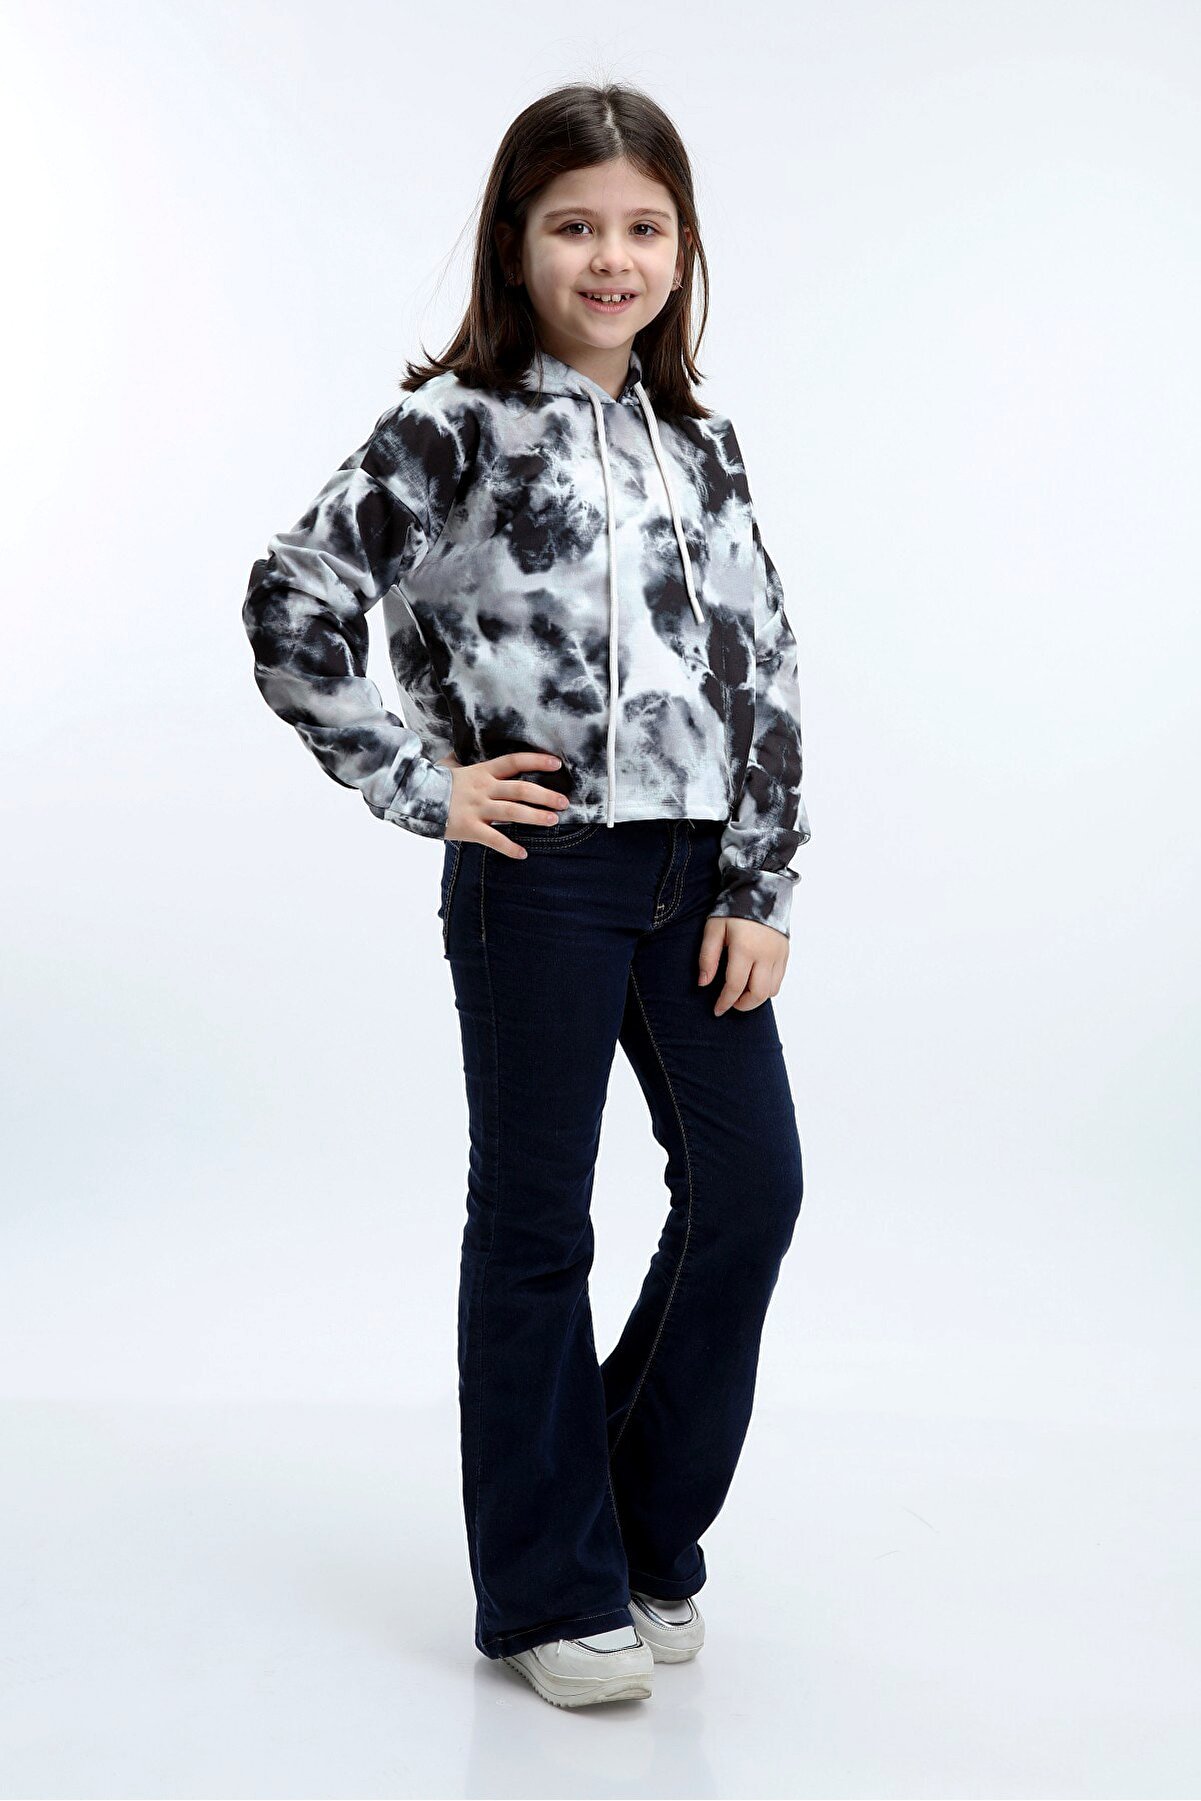 Stiloda Kız Çocuk Siyah Kemer Üstü Kapüşonlu Batik Sweatshirt Elbise